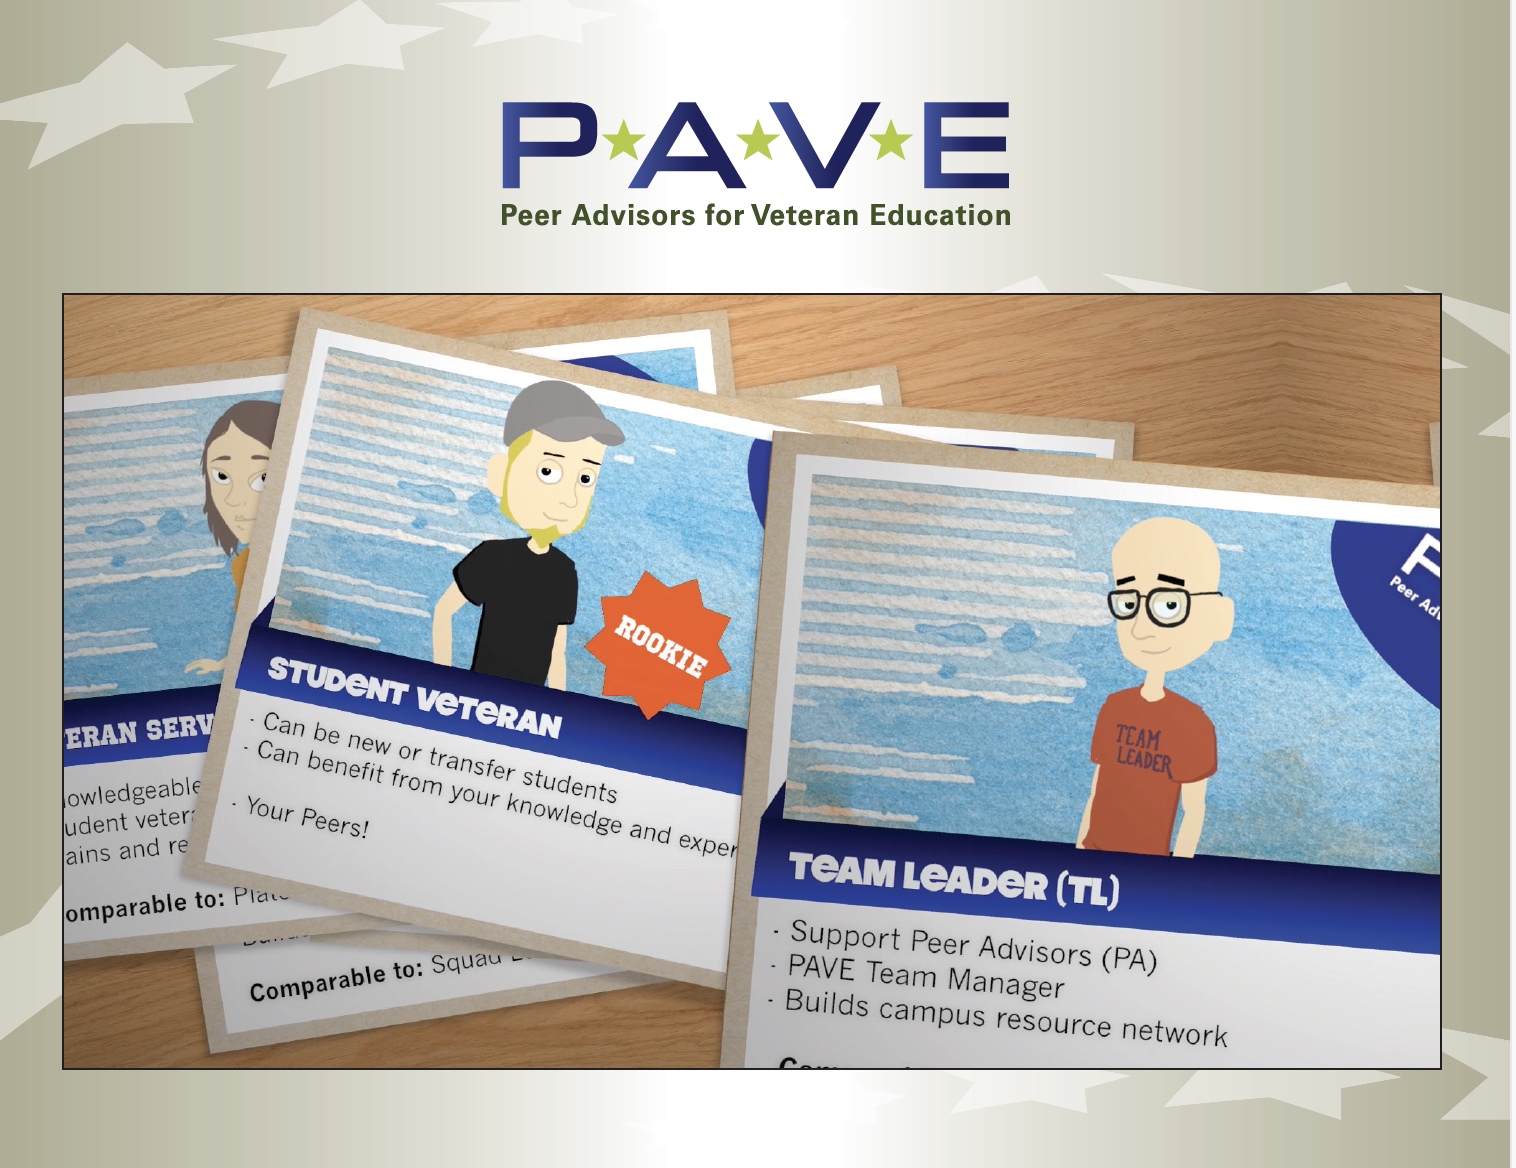 PAVE: Peer Advisors for Veteran Education